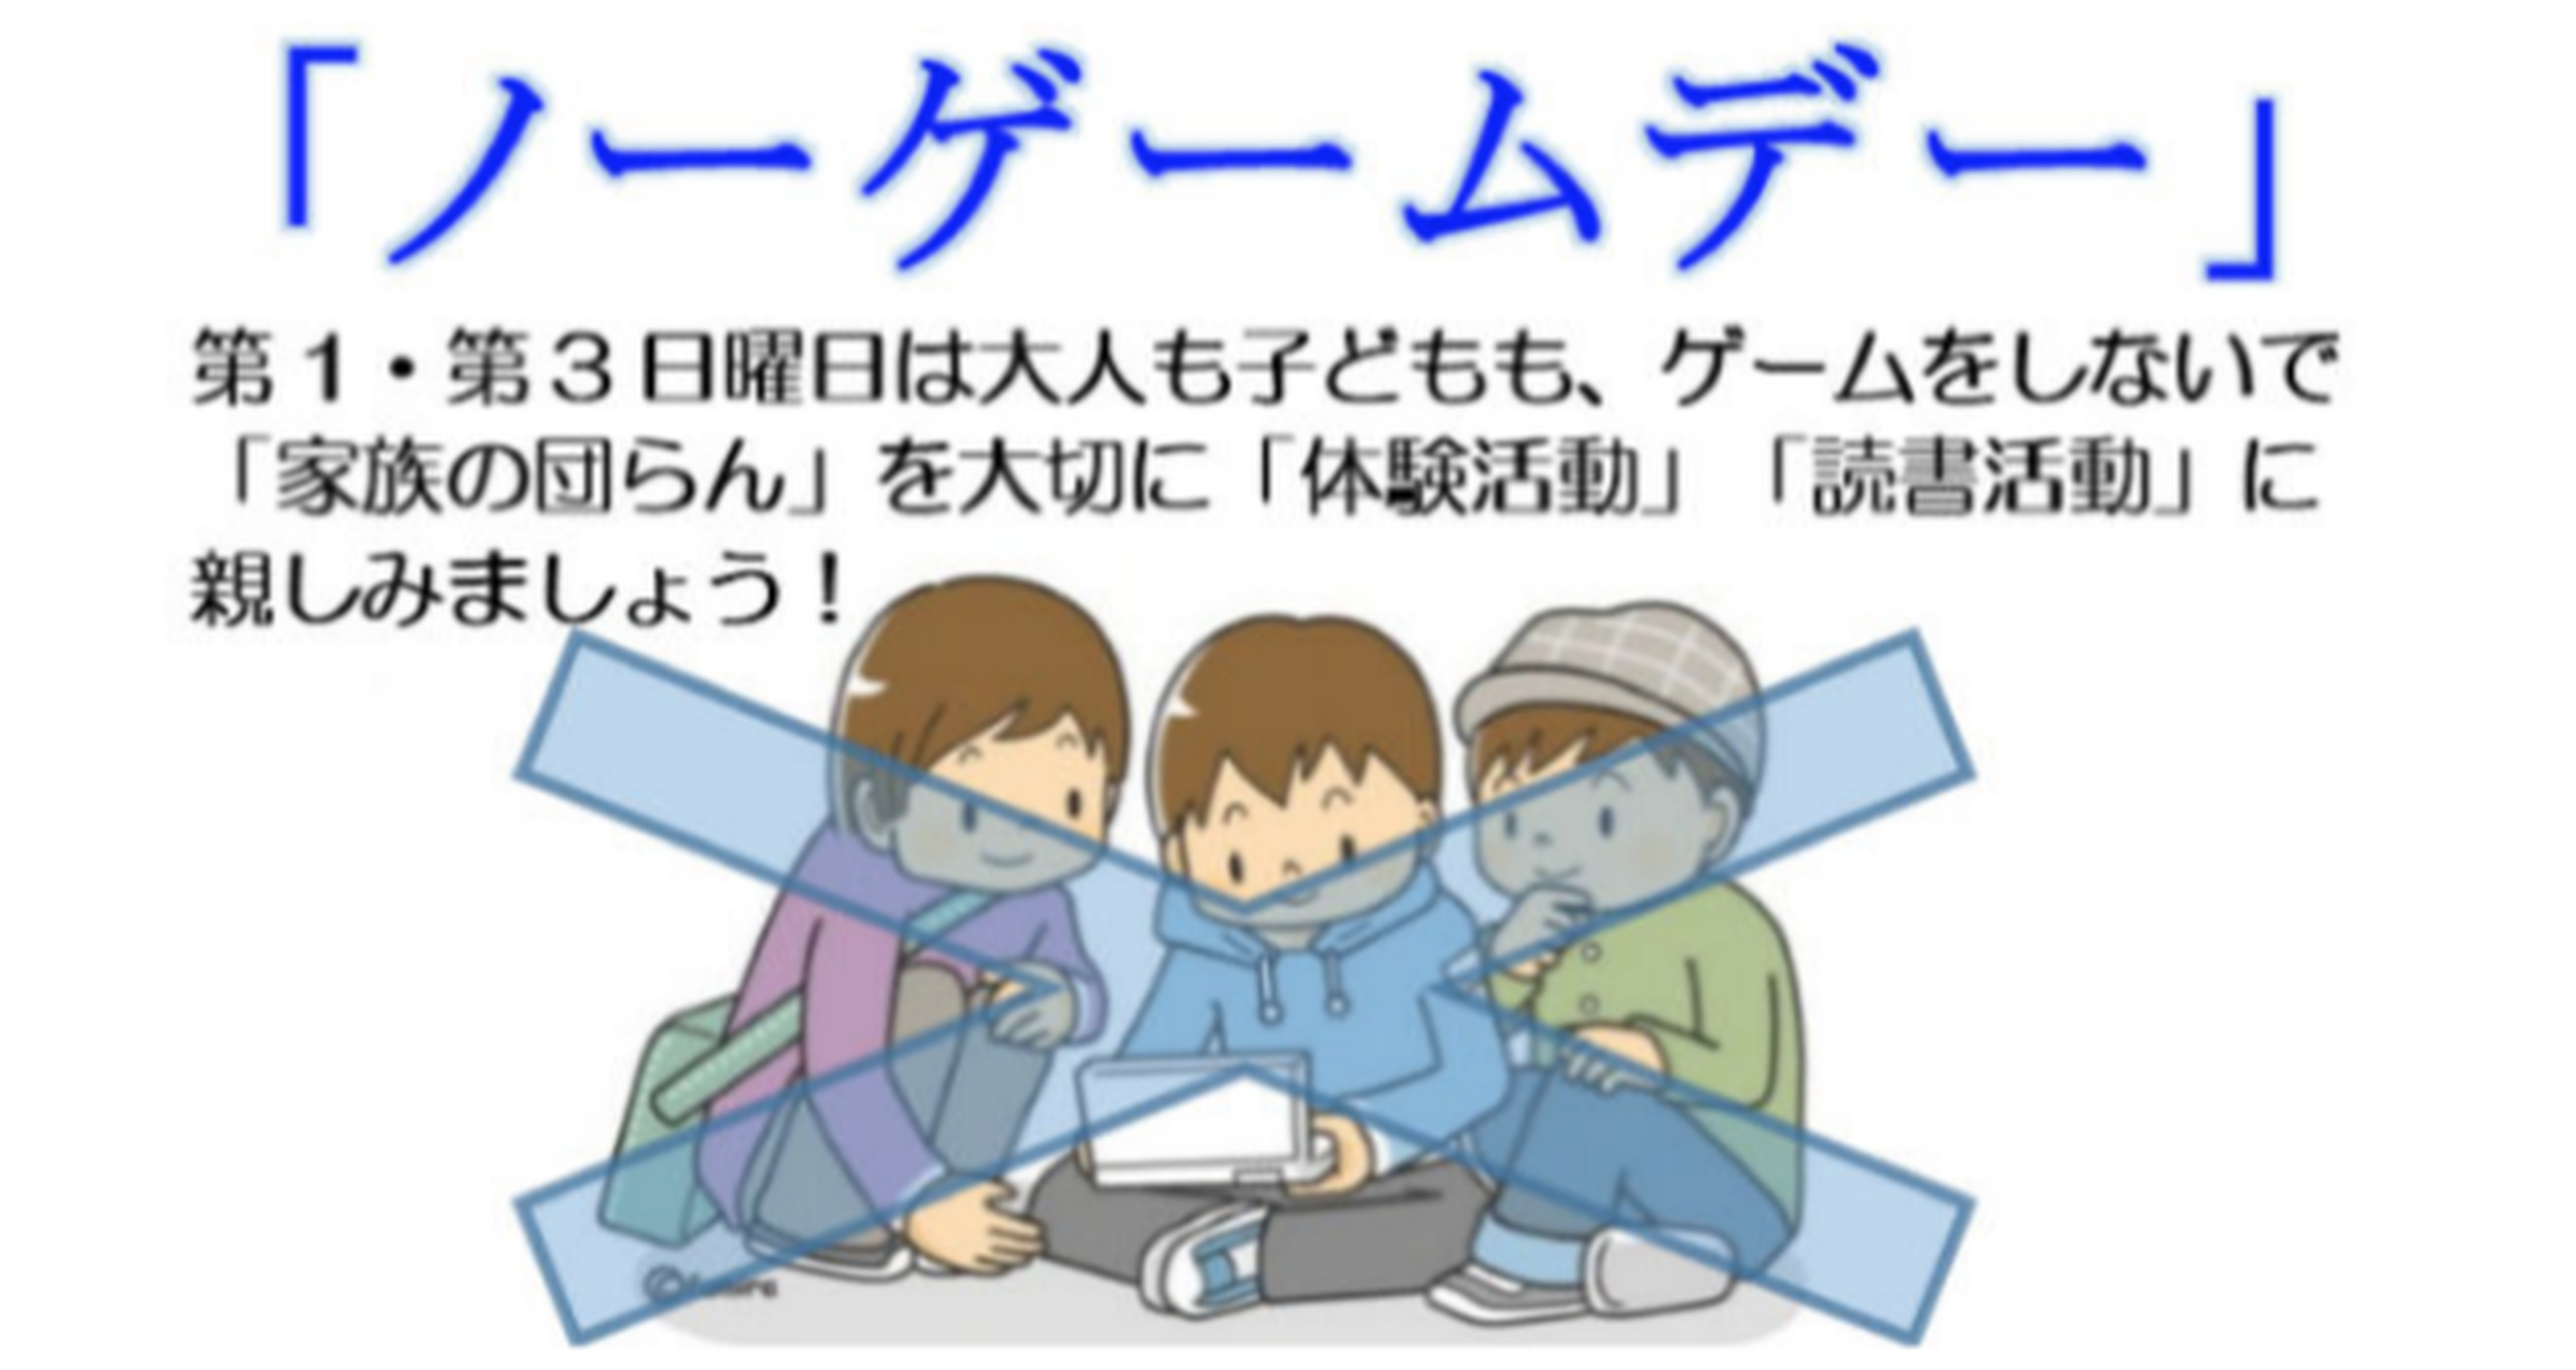 La región japonesa de Hokkaido propone el "Día sin Videojuegos"